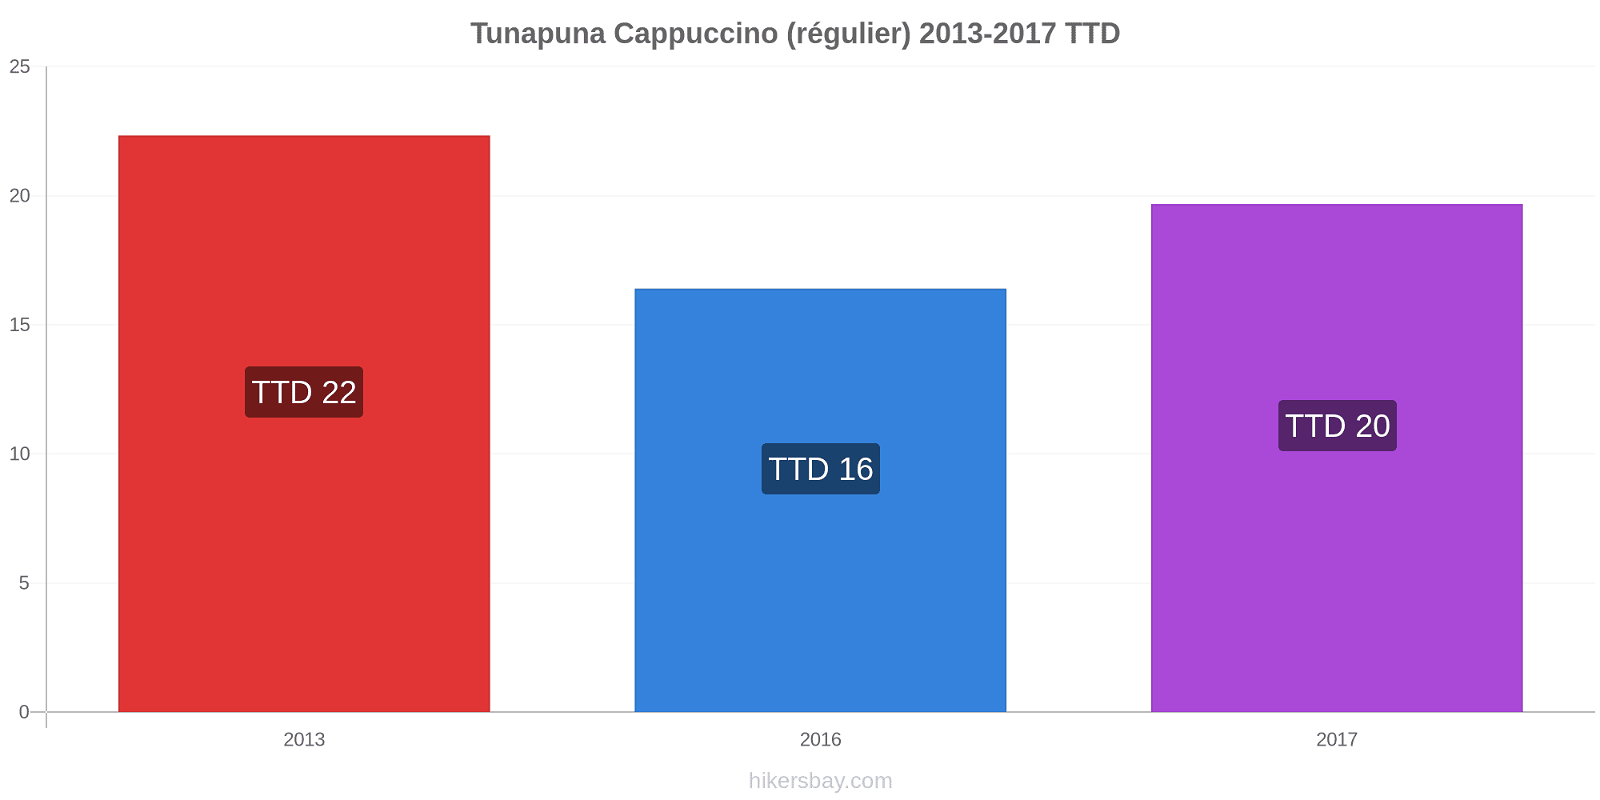 Tunapuna changements de prix Cappuccino (régulier) hikersbay.com